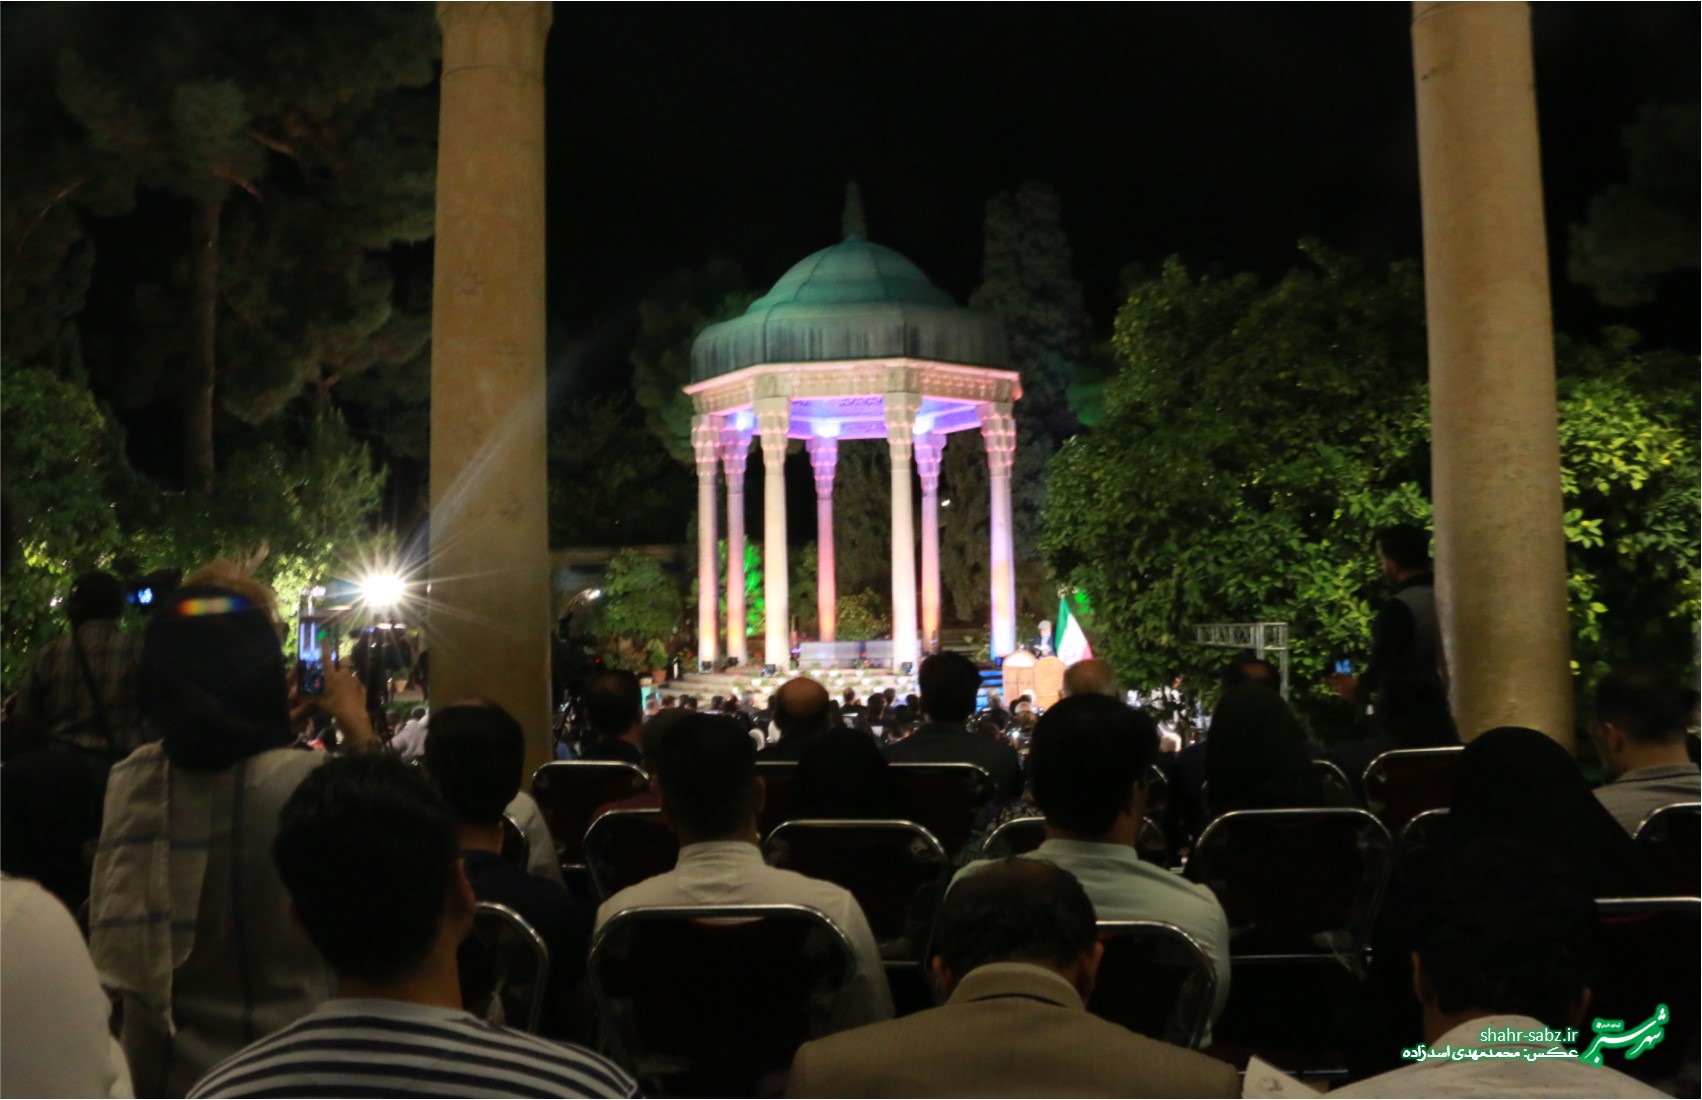 19-07-1397 آیین بزرگداشت یادروز حافظ در حافظیه شیراز - عکس از محمدمهدی اسدزاده